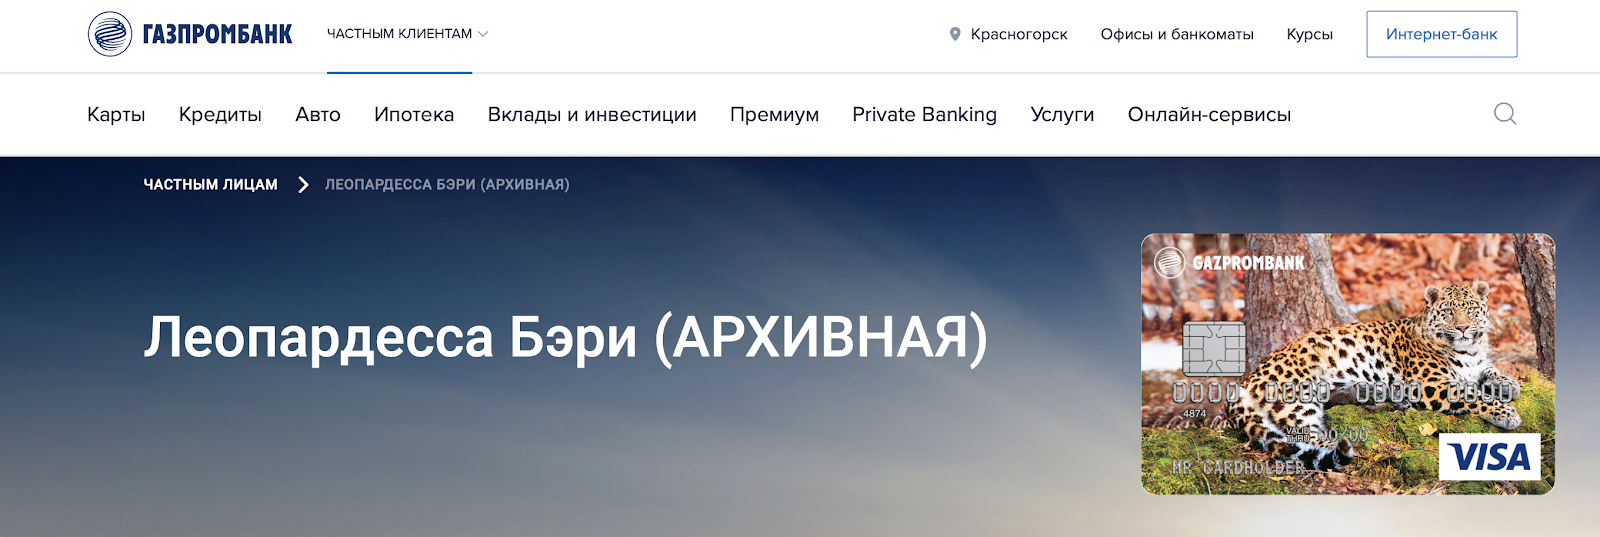 Сайт Газпромбанка